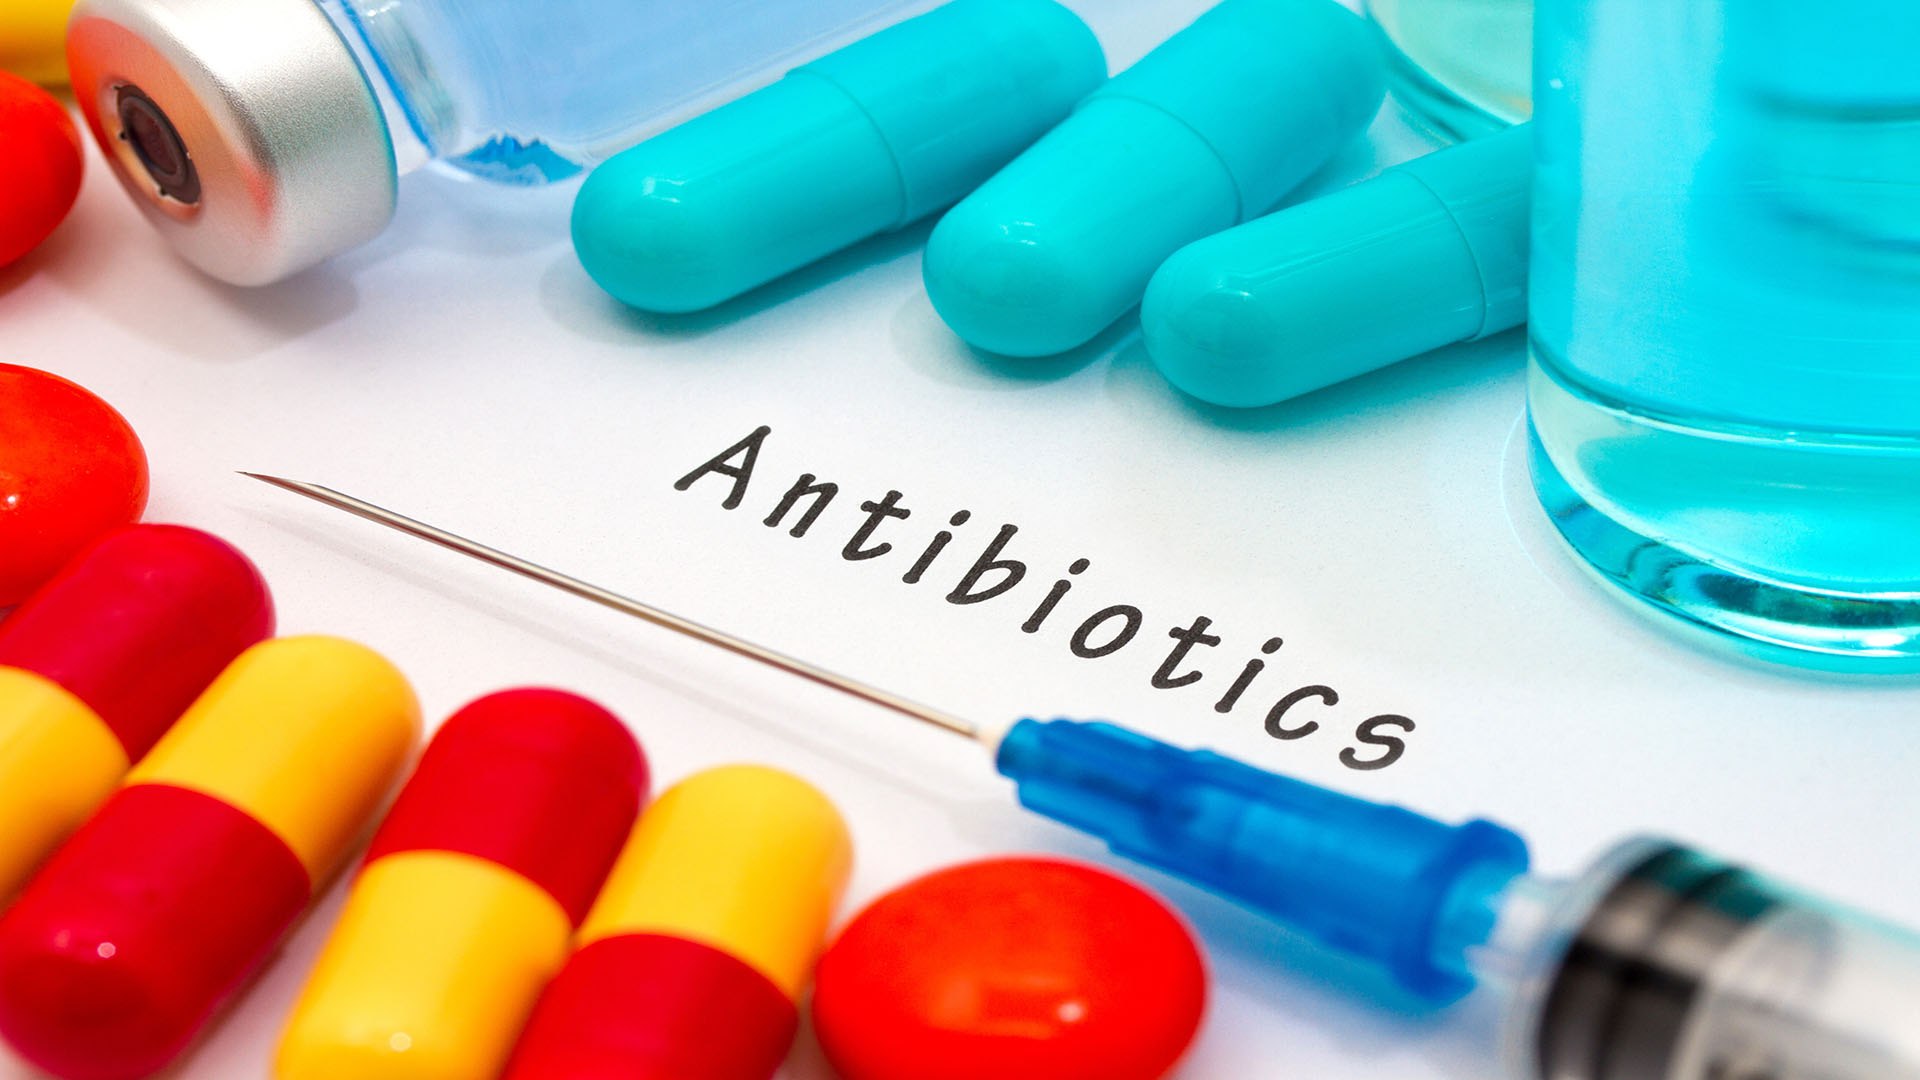 Antibiotico estreñimiento